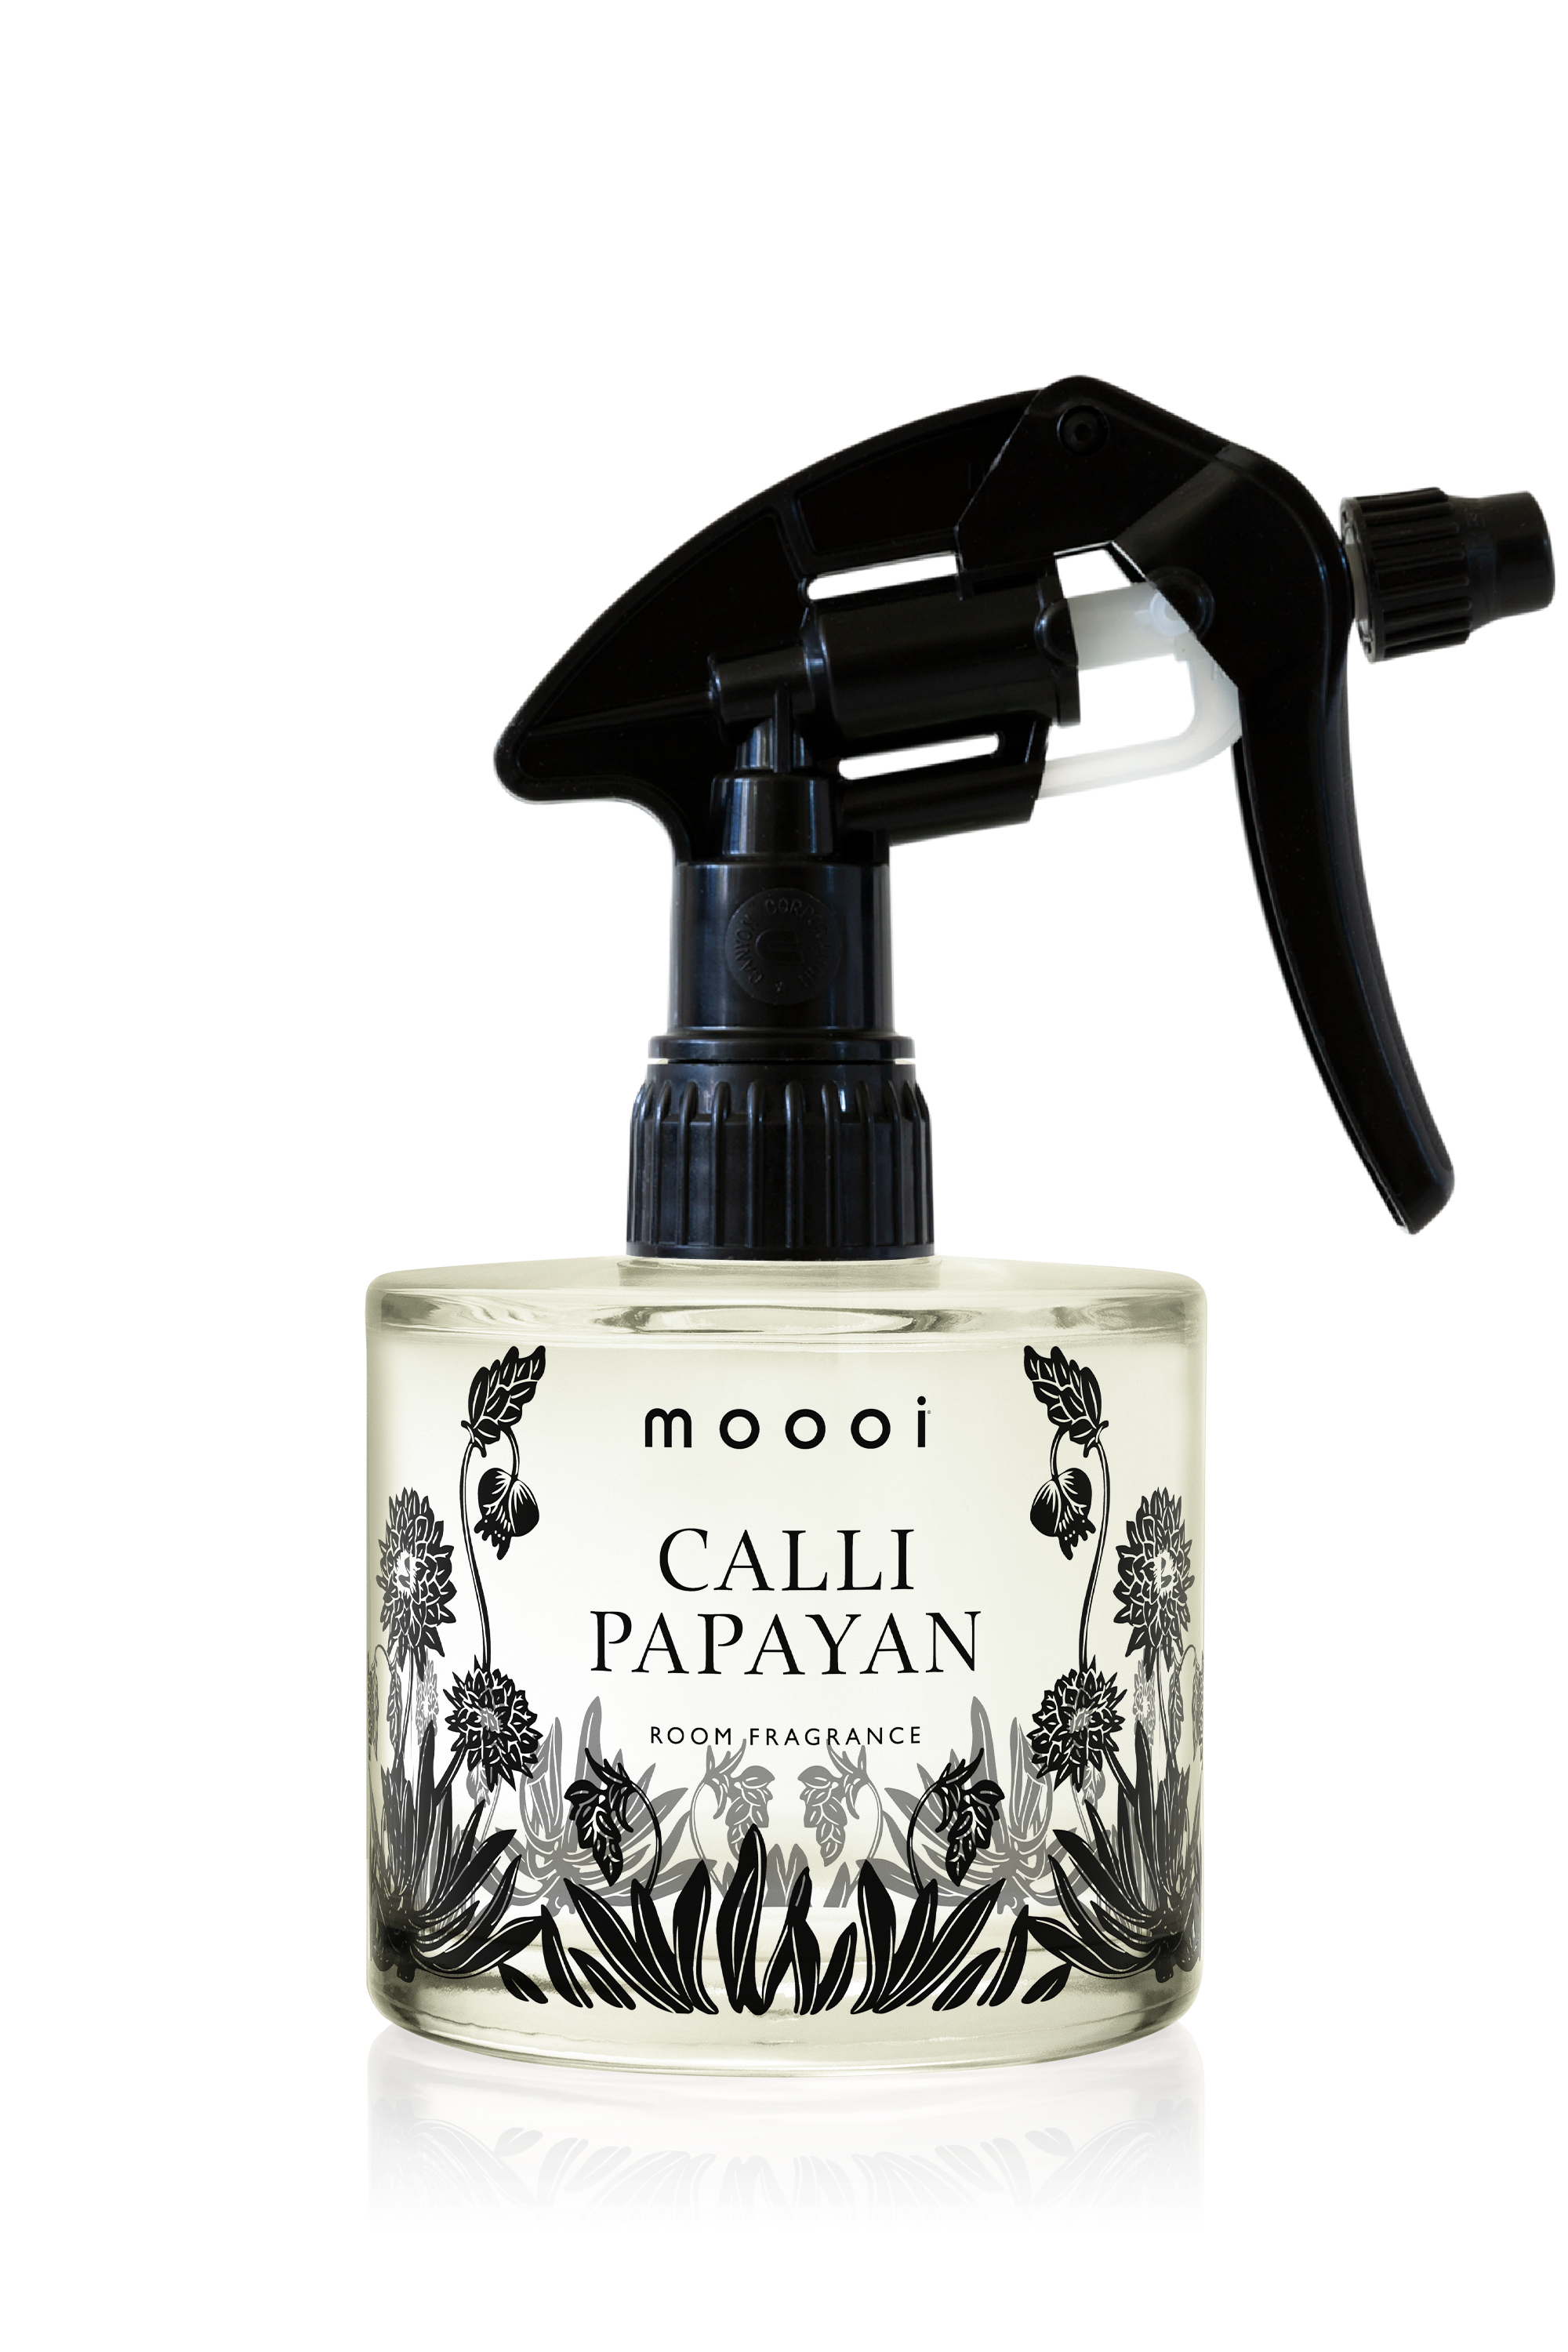 Home Fragrance Calli Papayan bottle spray